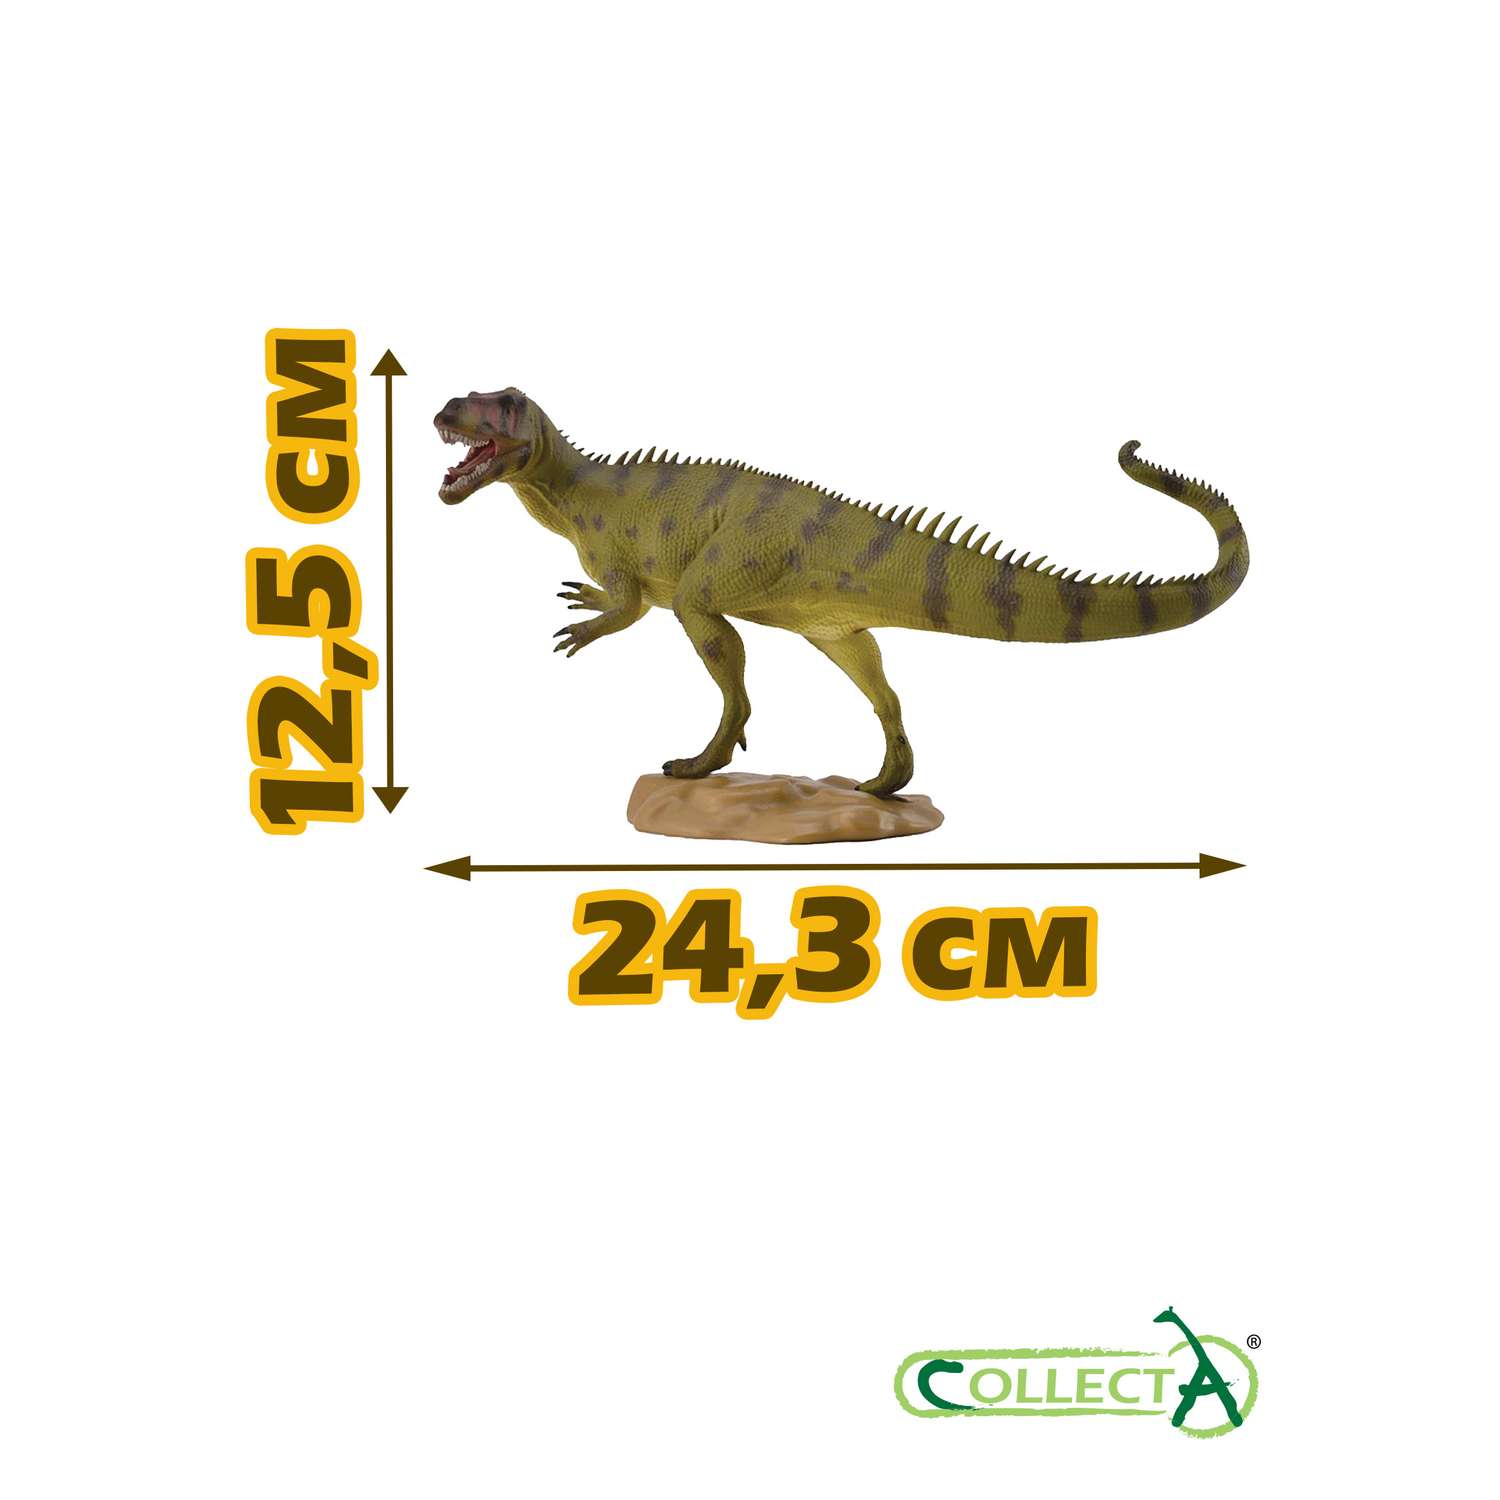 Игрушка Collecta Тираннозавр с подвижной челюстью фигурка динозавра 24 см - фото 2